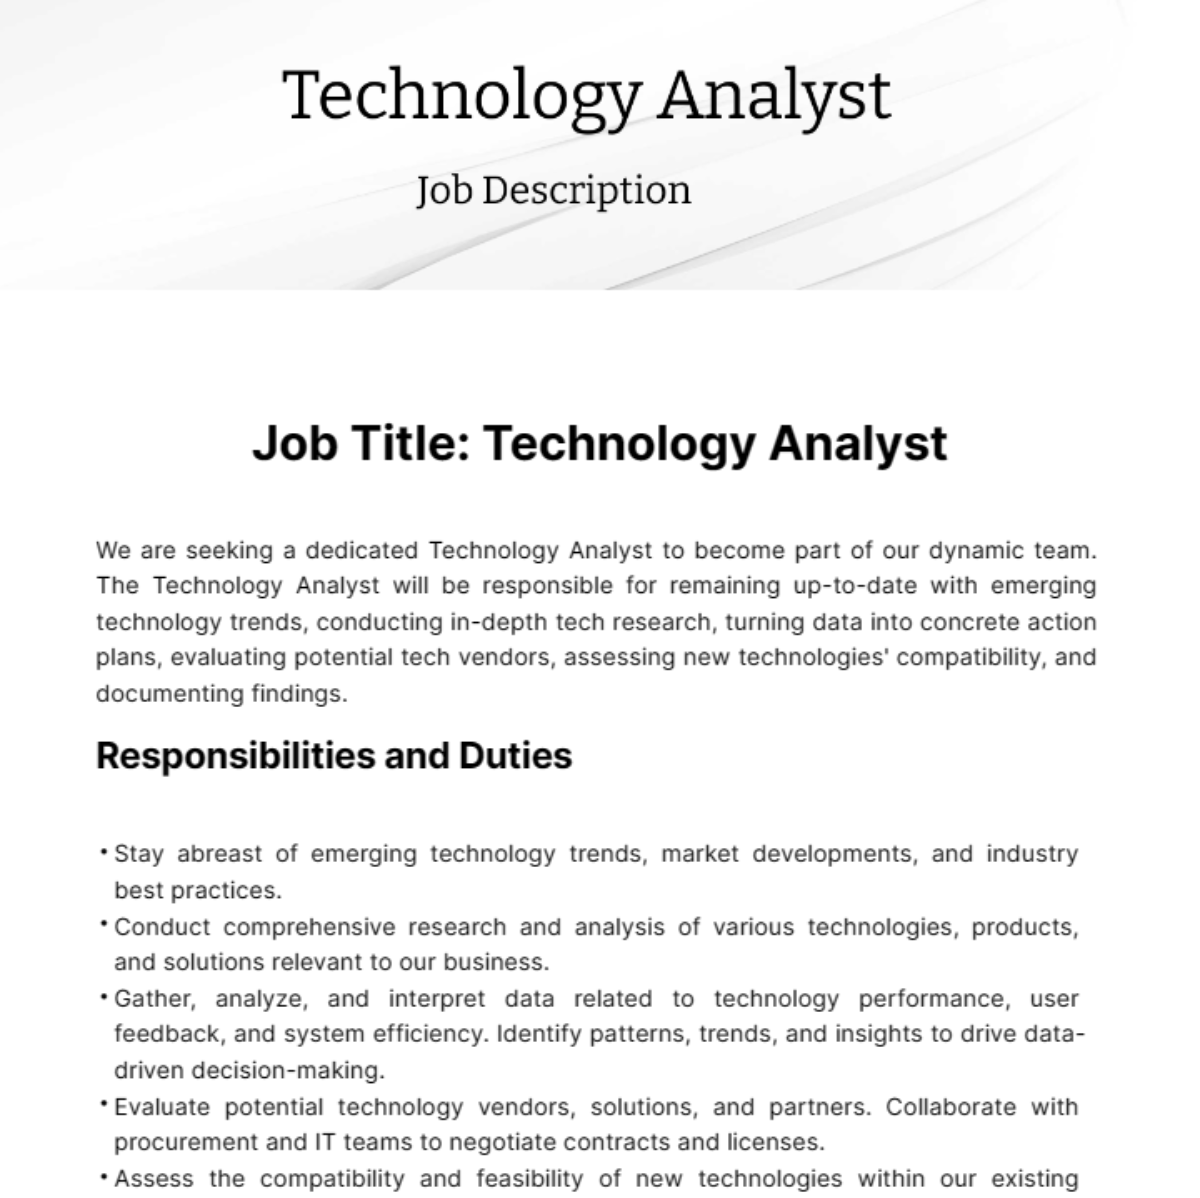 Technology Analyst Job Description Template